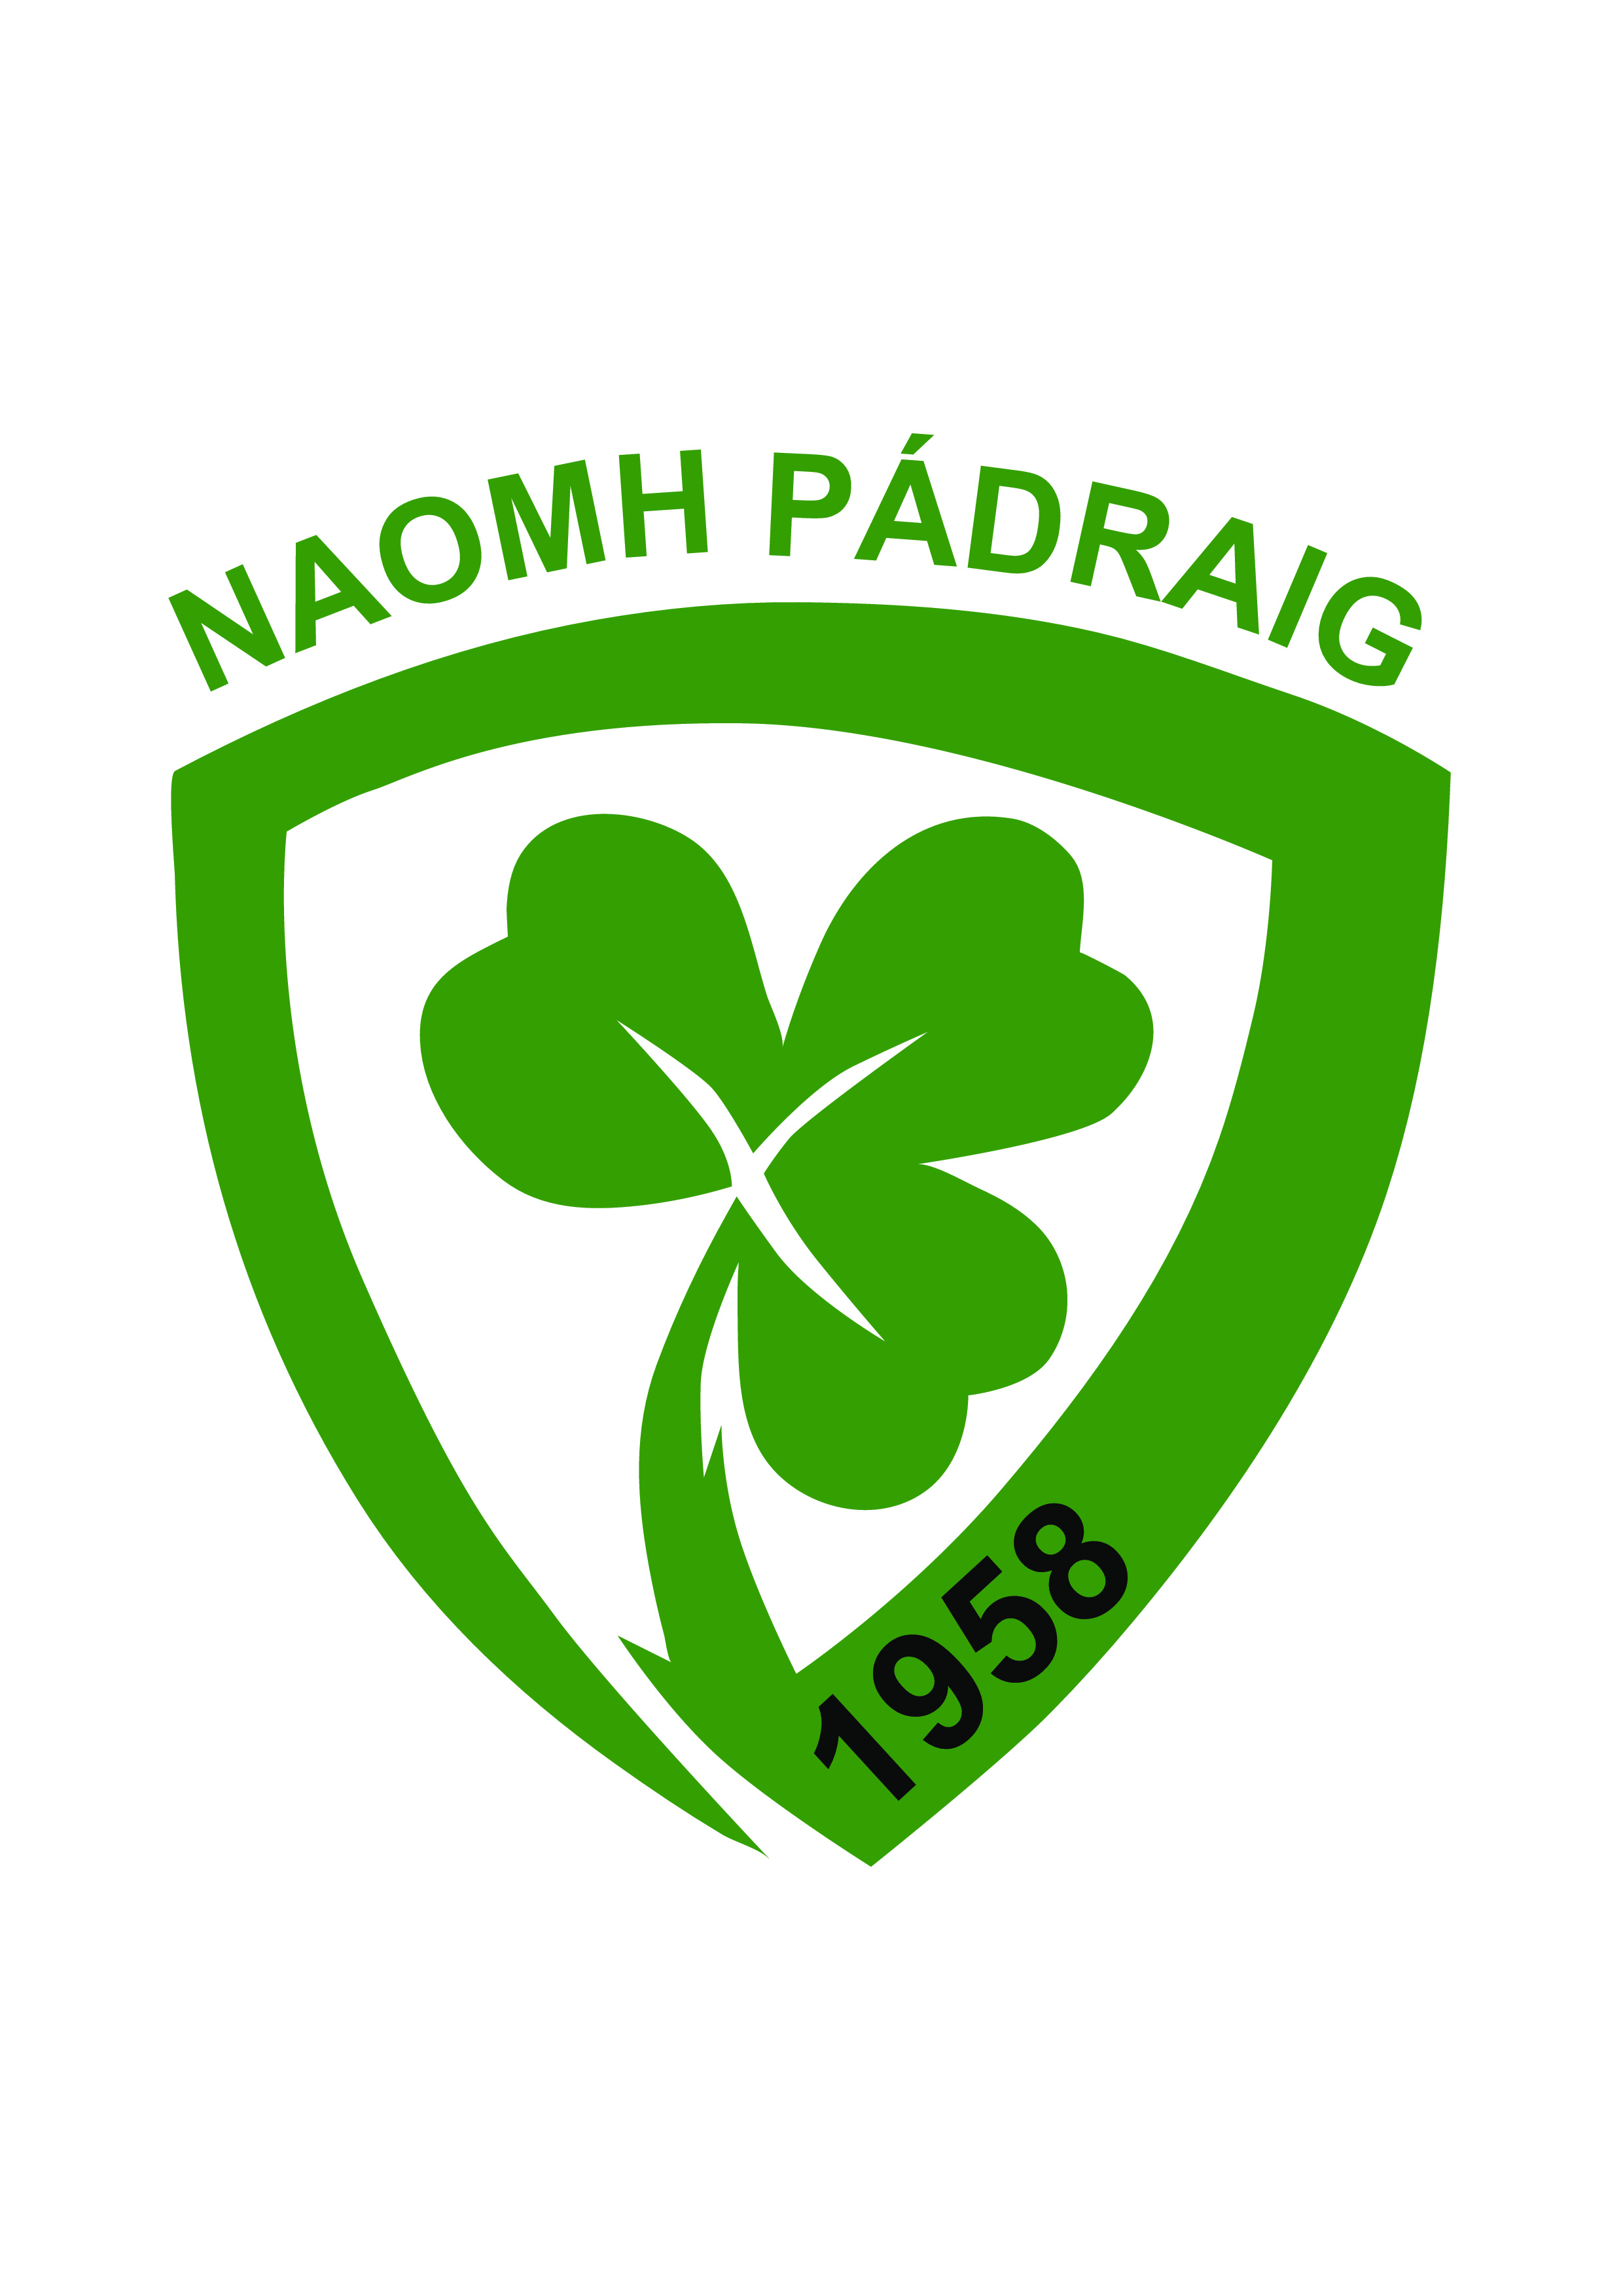 St Patrick's Club Notes 9 May, 2022